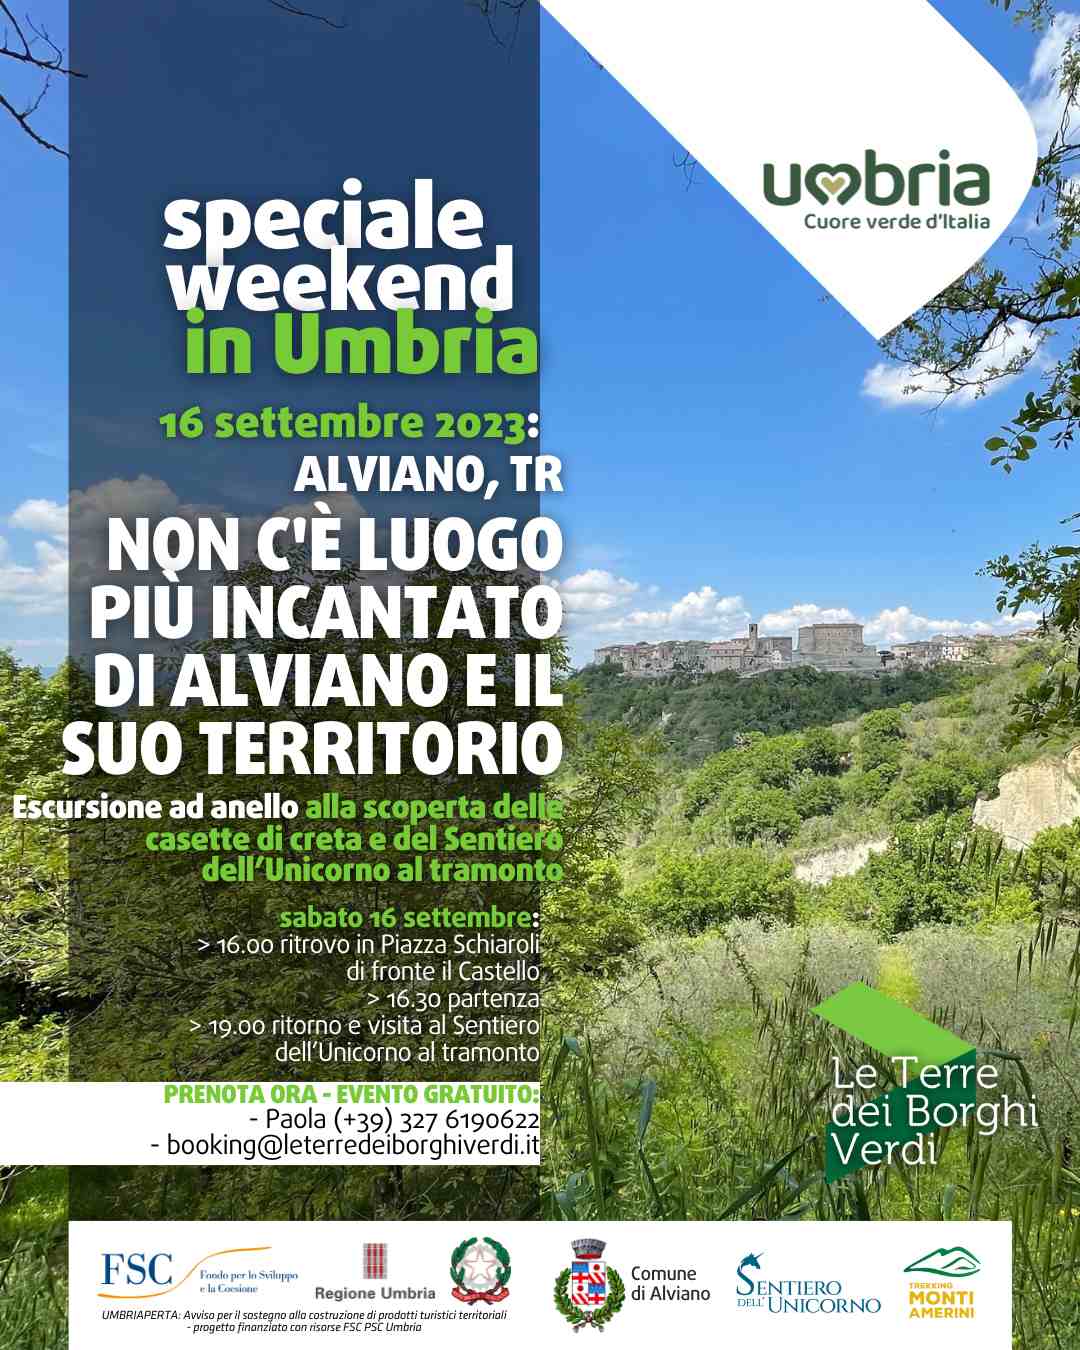 Locandina dell'evento di sabato 16 settembre 2023 ad Alviano, "Non c'è luogo più incantato di Alviano e il suo territorio"